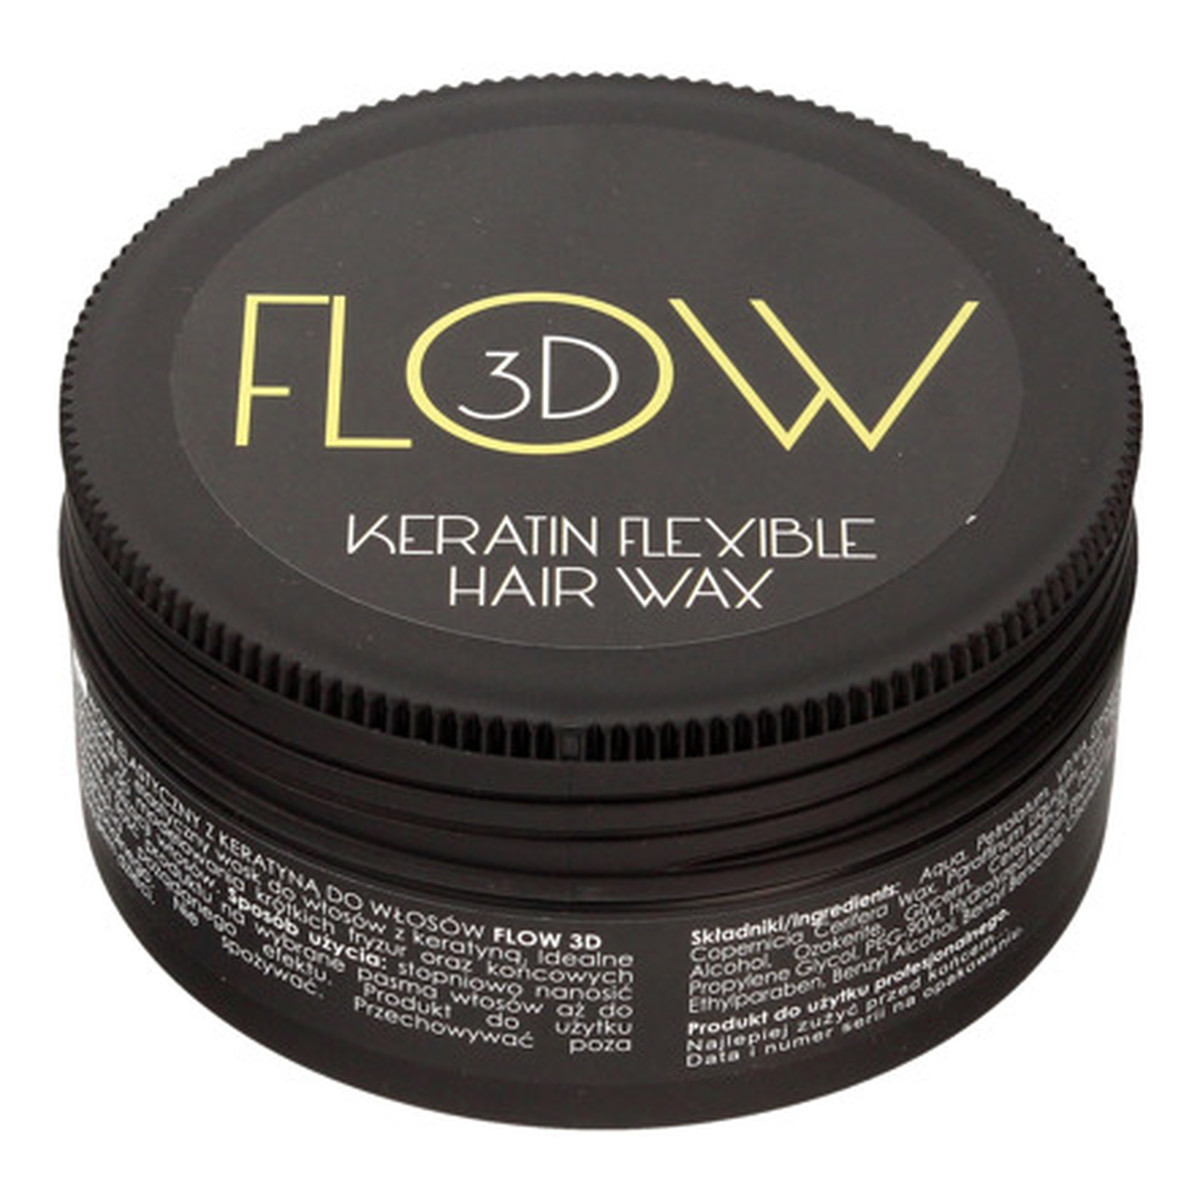 Stapiz Flow 3D Elastyczny wosk do włosów z keratyną 100g